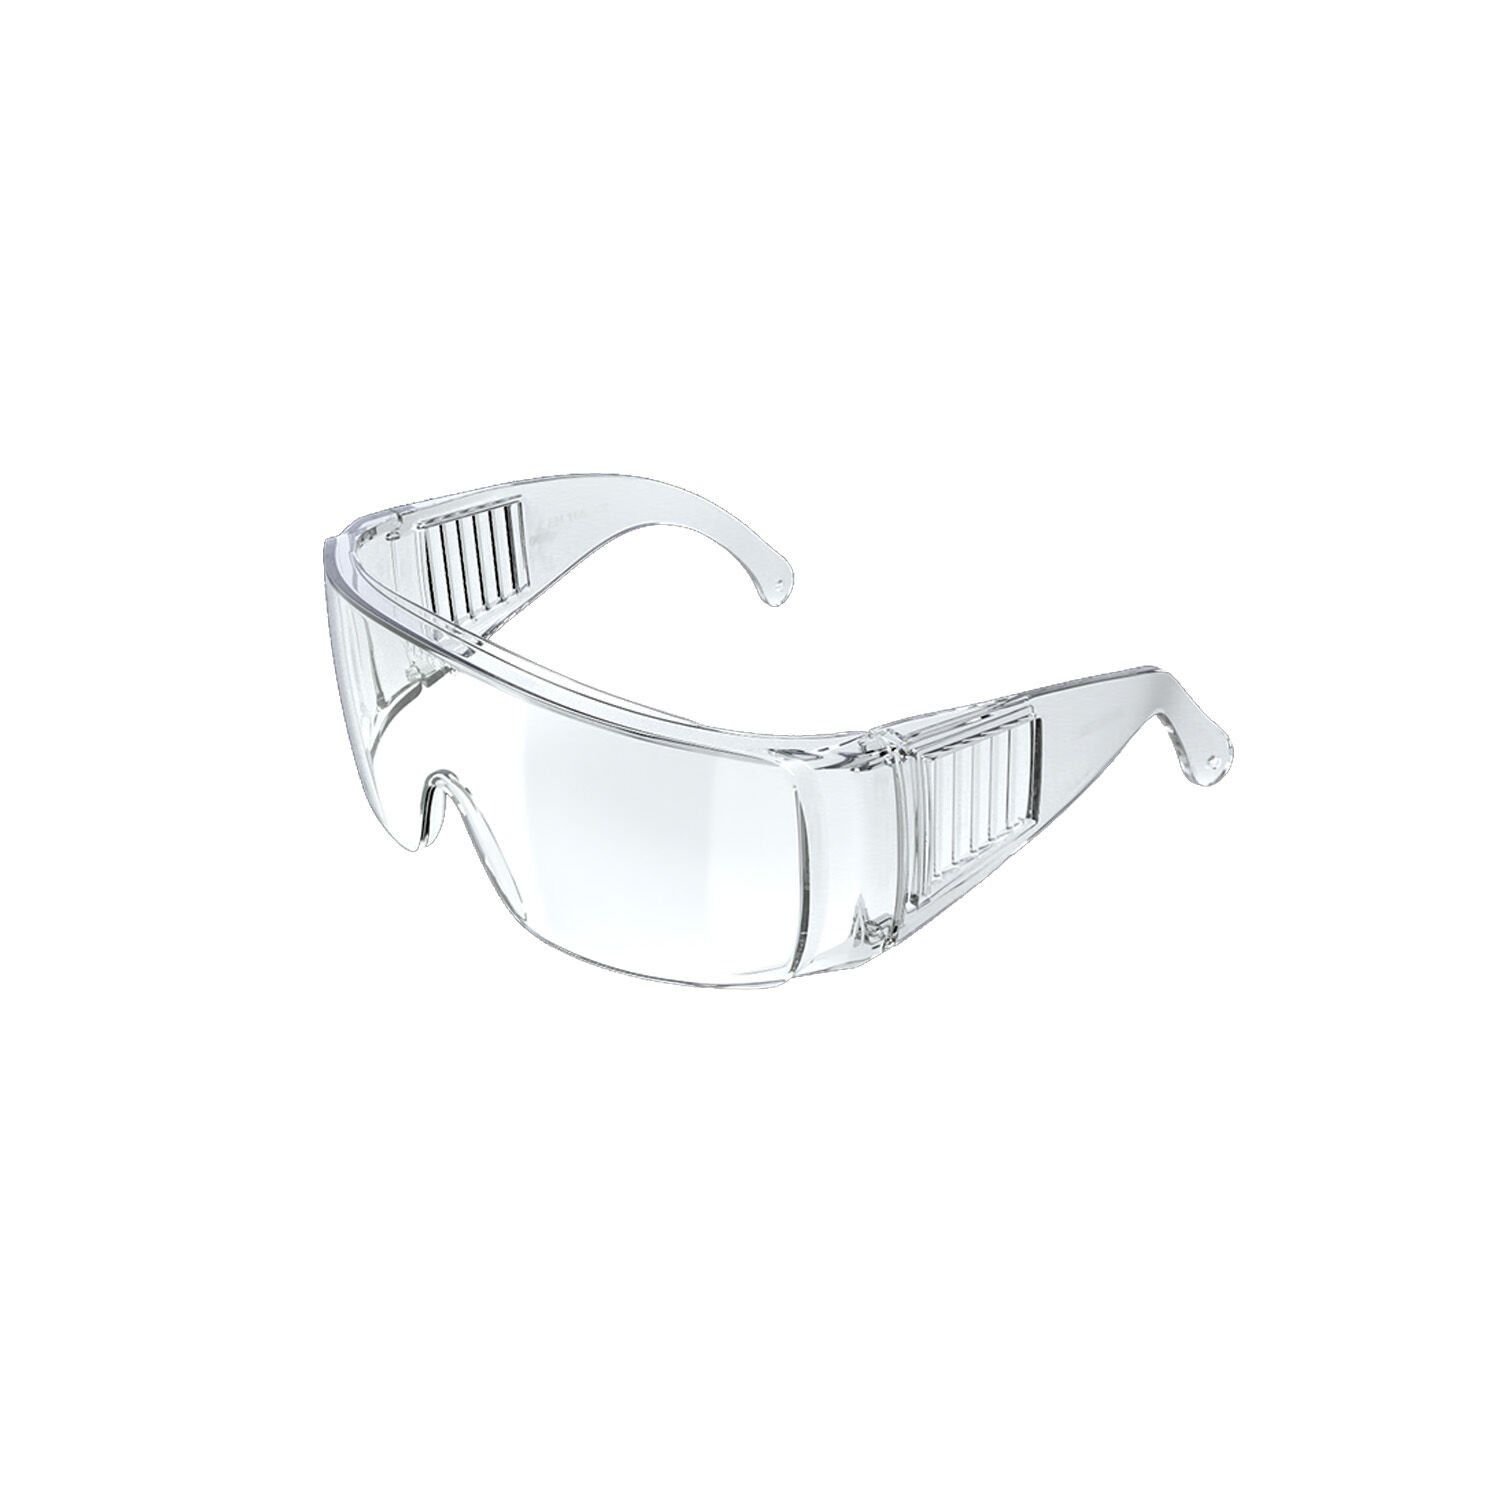 Baymax S-700 Major Gözlük Üstü Koruyucu Gözlük Şeffaf Antifog